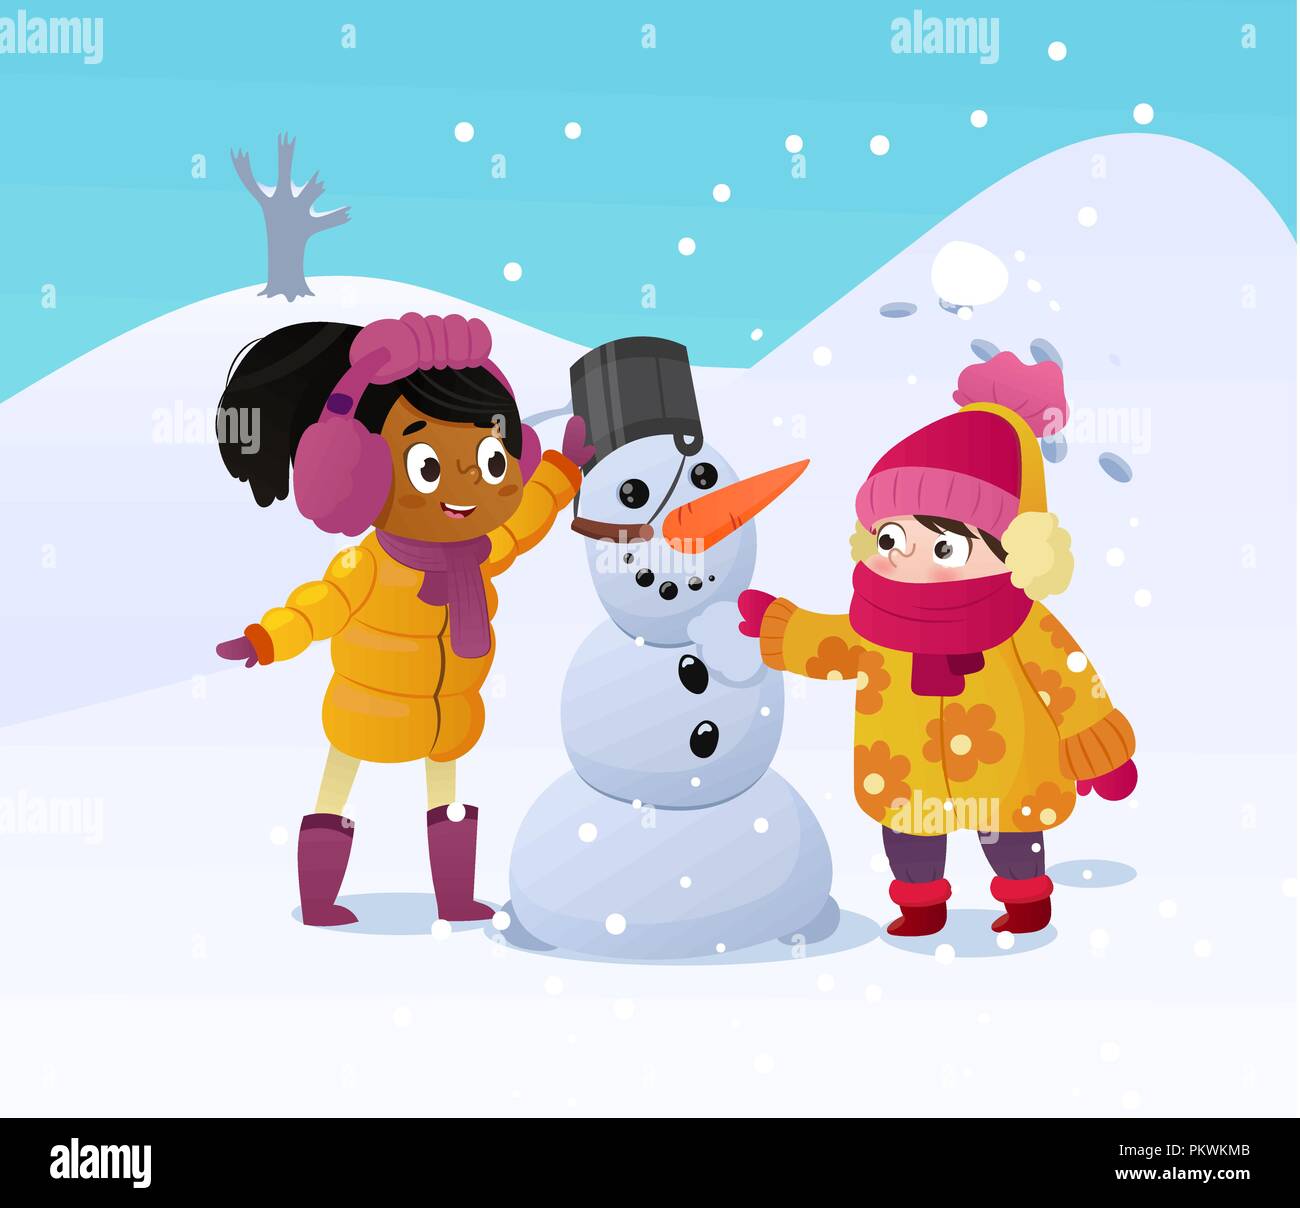 Contenti i bambini giocando con il pupazzo di neve. Divertenti piccole girs in una passeggiata in inverno all'esterno. I bambini la costruzione di uomo di neve giocando all'aperto sul soleggiato inverno nevoso giorno. Divertimento all'aperto su vacanze di Natale. Vettore Illustrazione Vettoriale